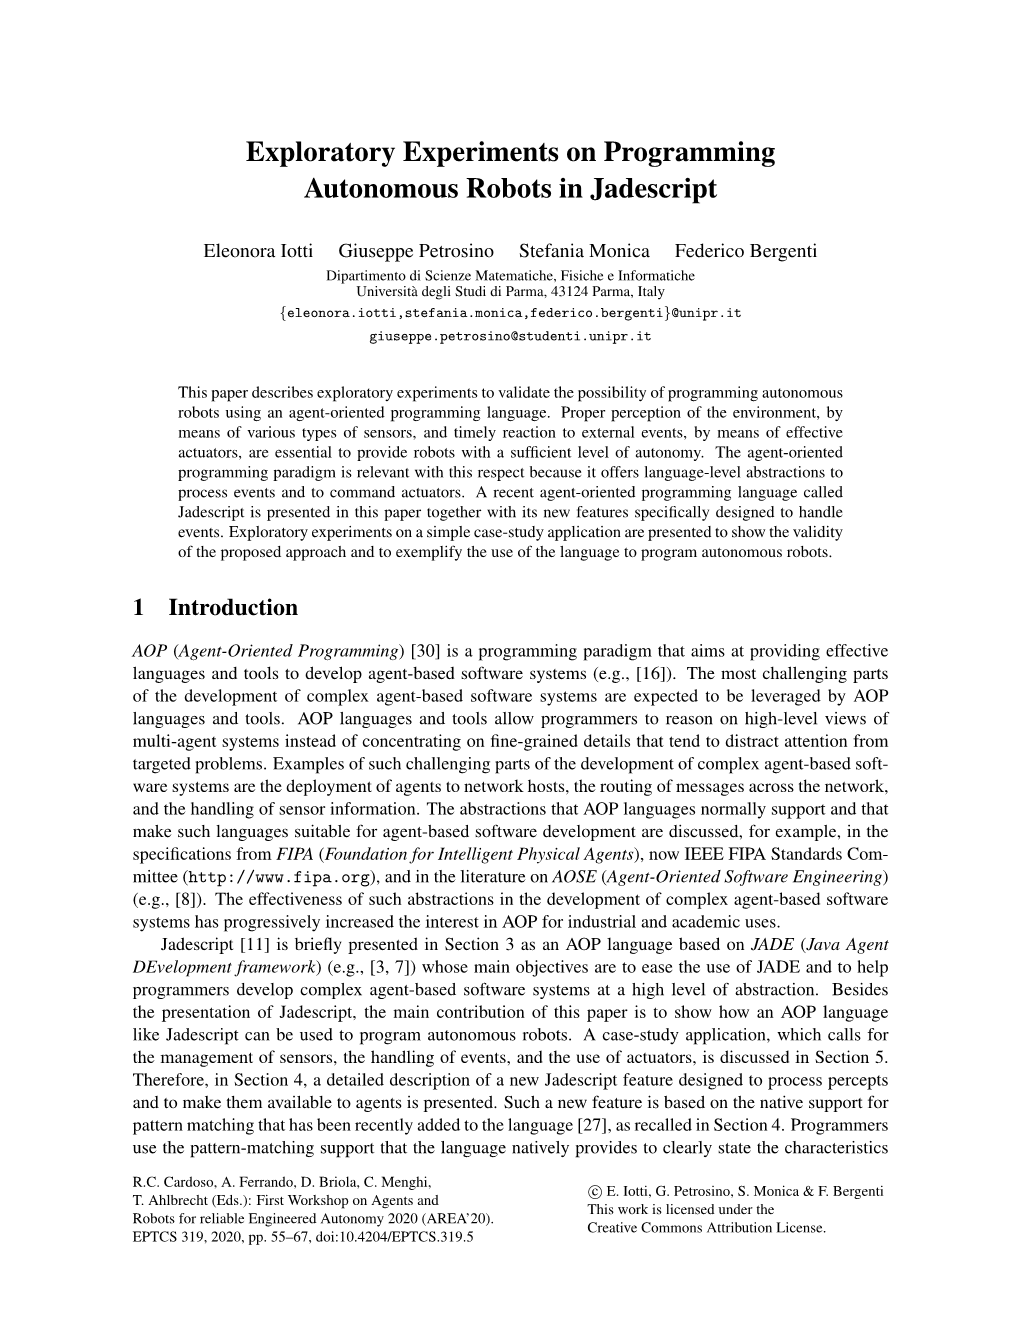 Exploratory Experiments on Programming Autonomous Robots in Jadescript